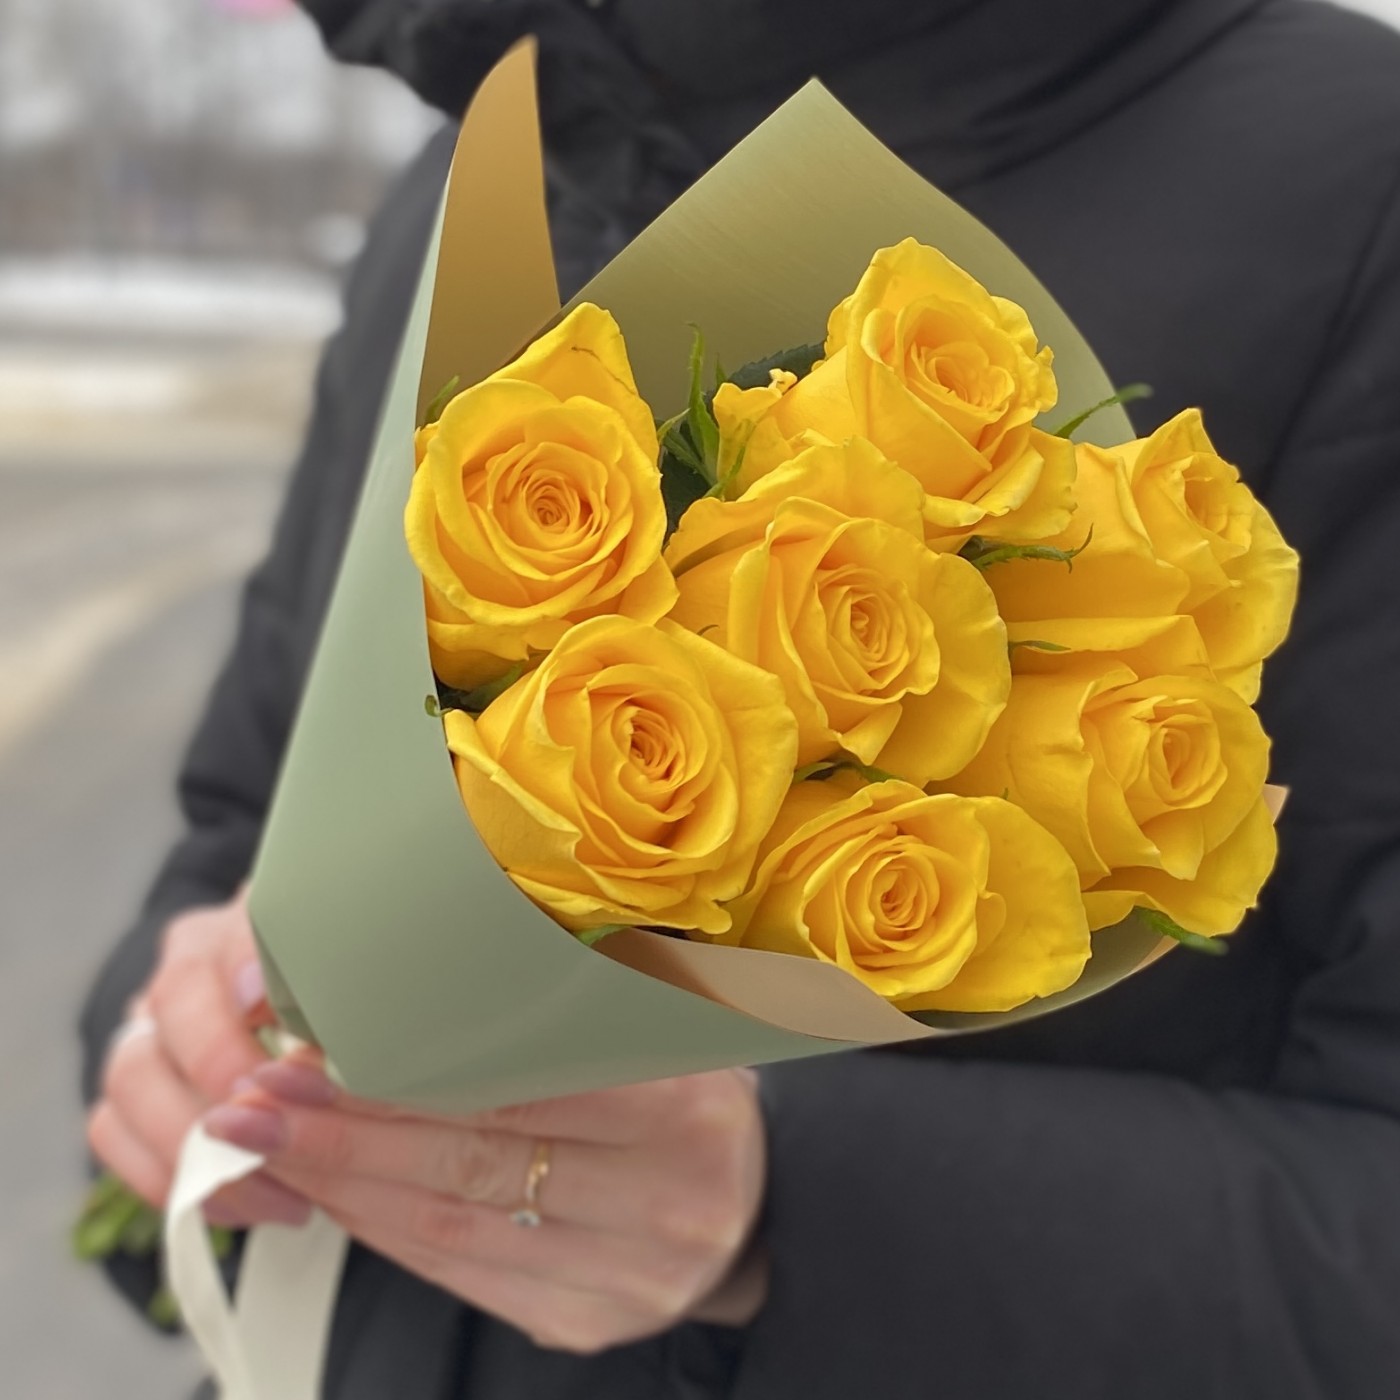 Роскошный букет желтых роз в корзине до 1000 руб на День Восьмого Марта